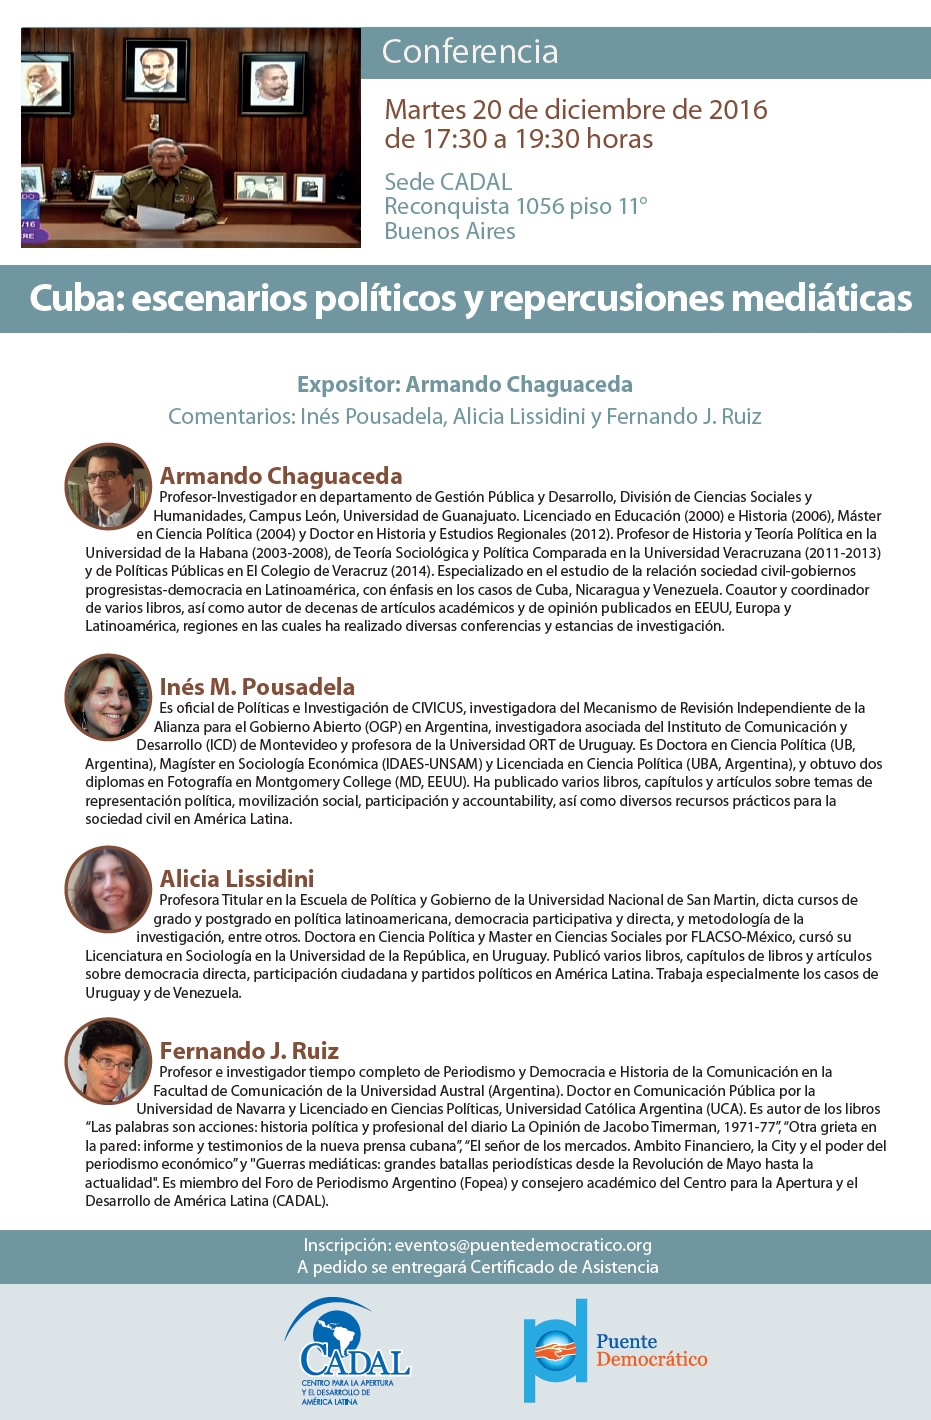 Conferencia - Cuba: escenarios políticos y repercusiones mediáticas